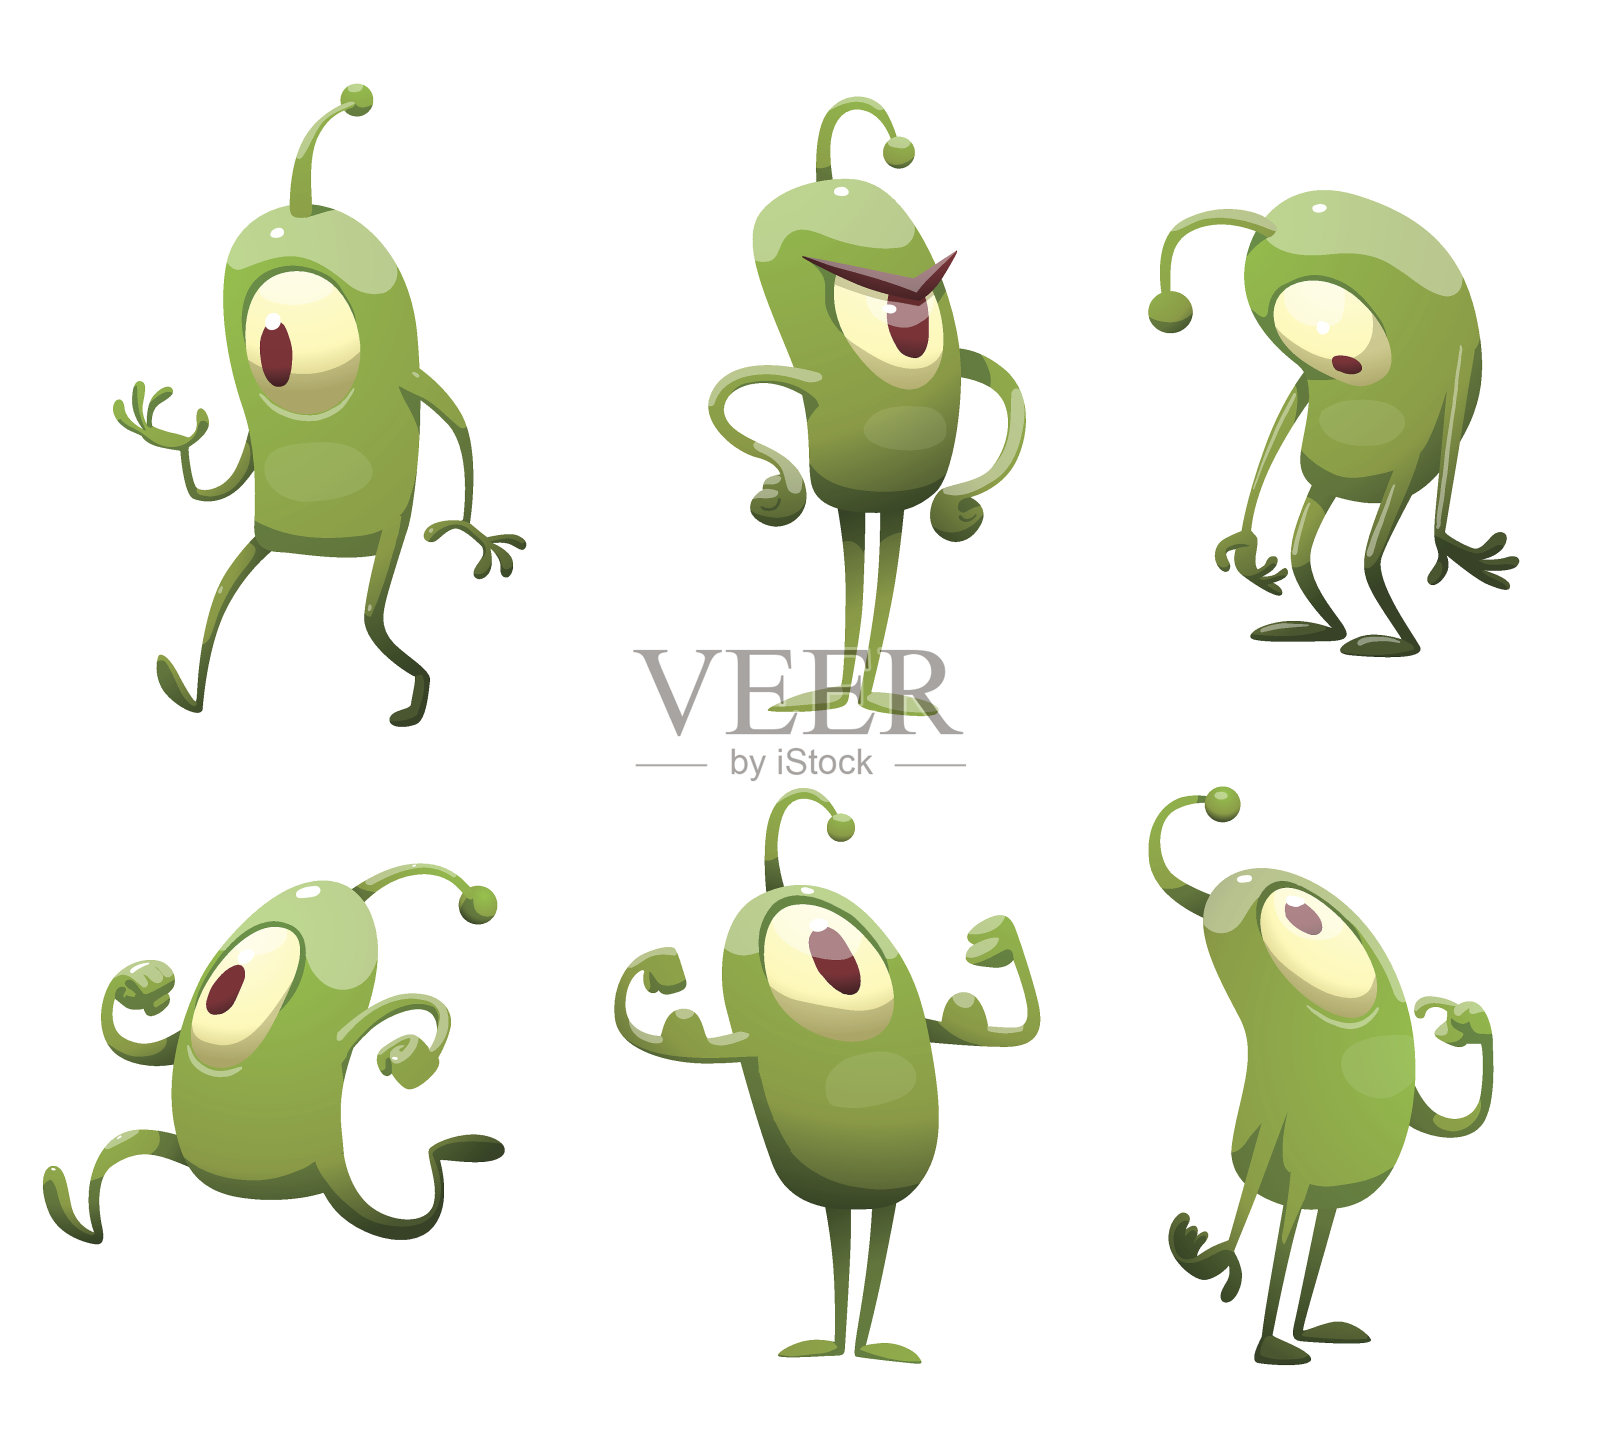 一组有趣的绿色微生物插画图片素材